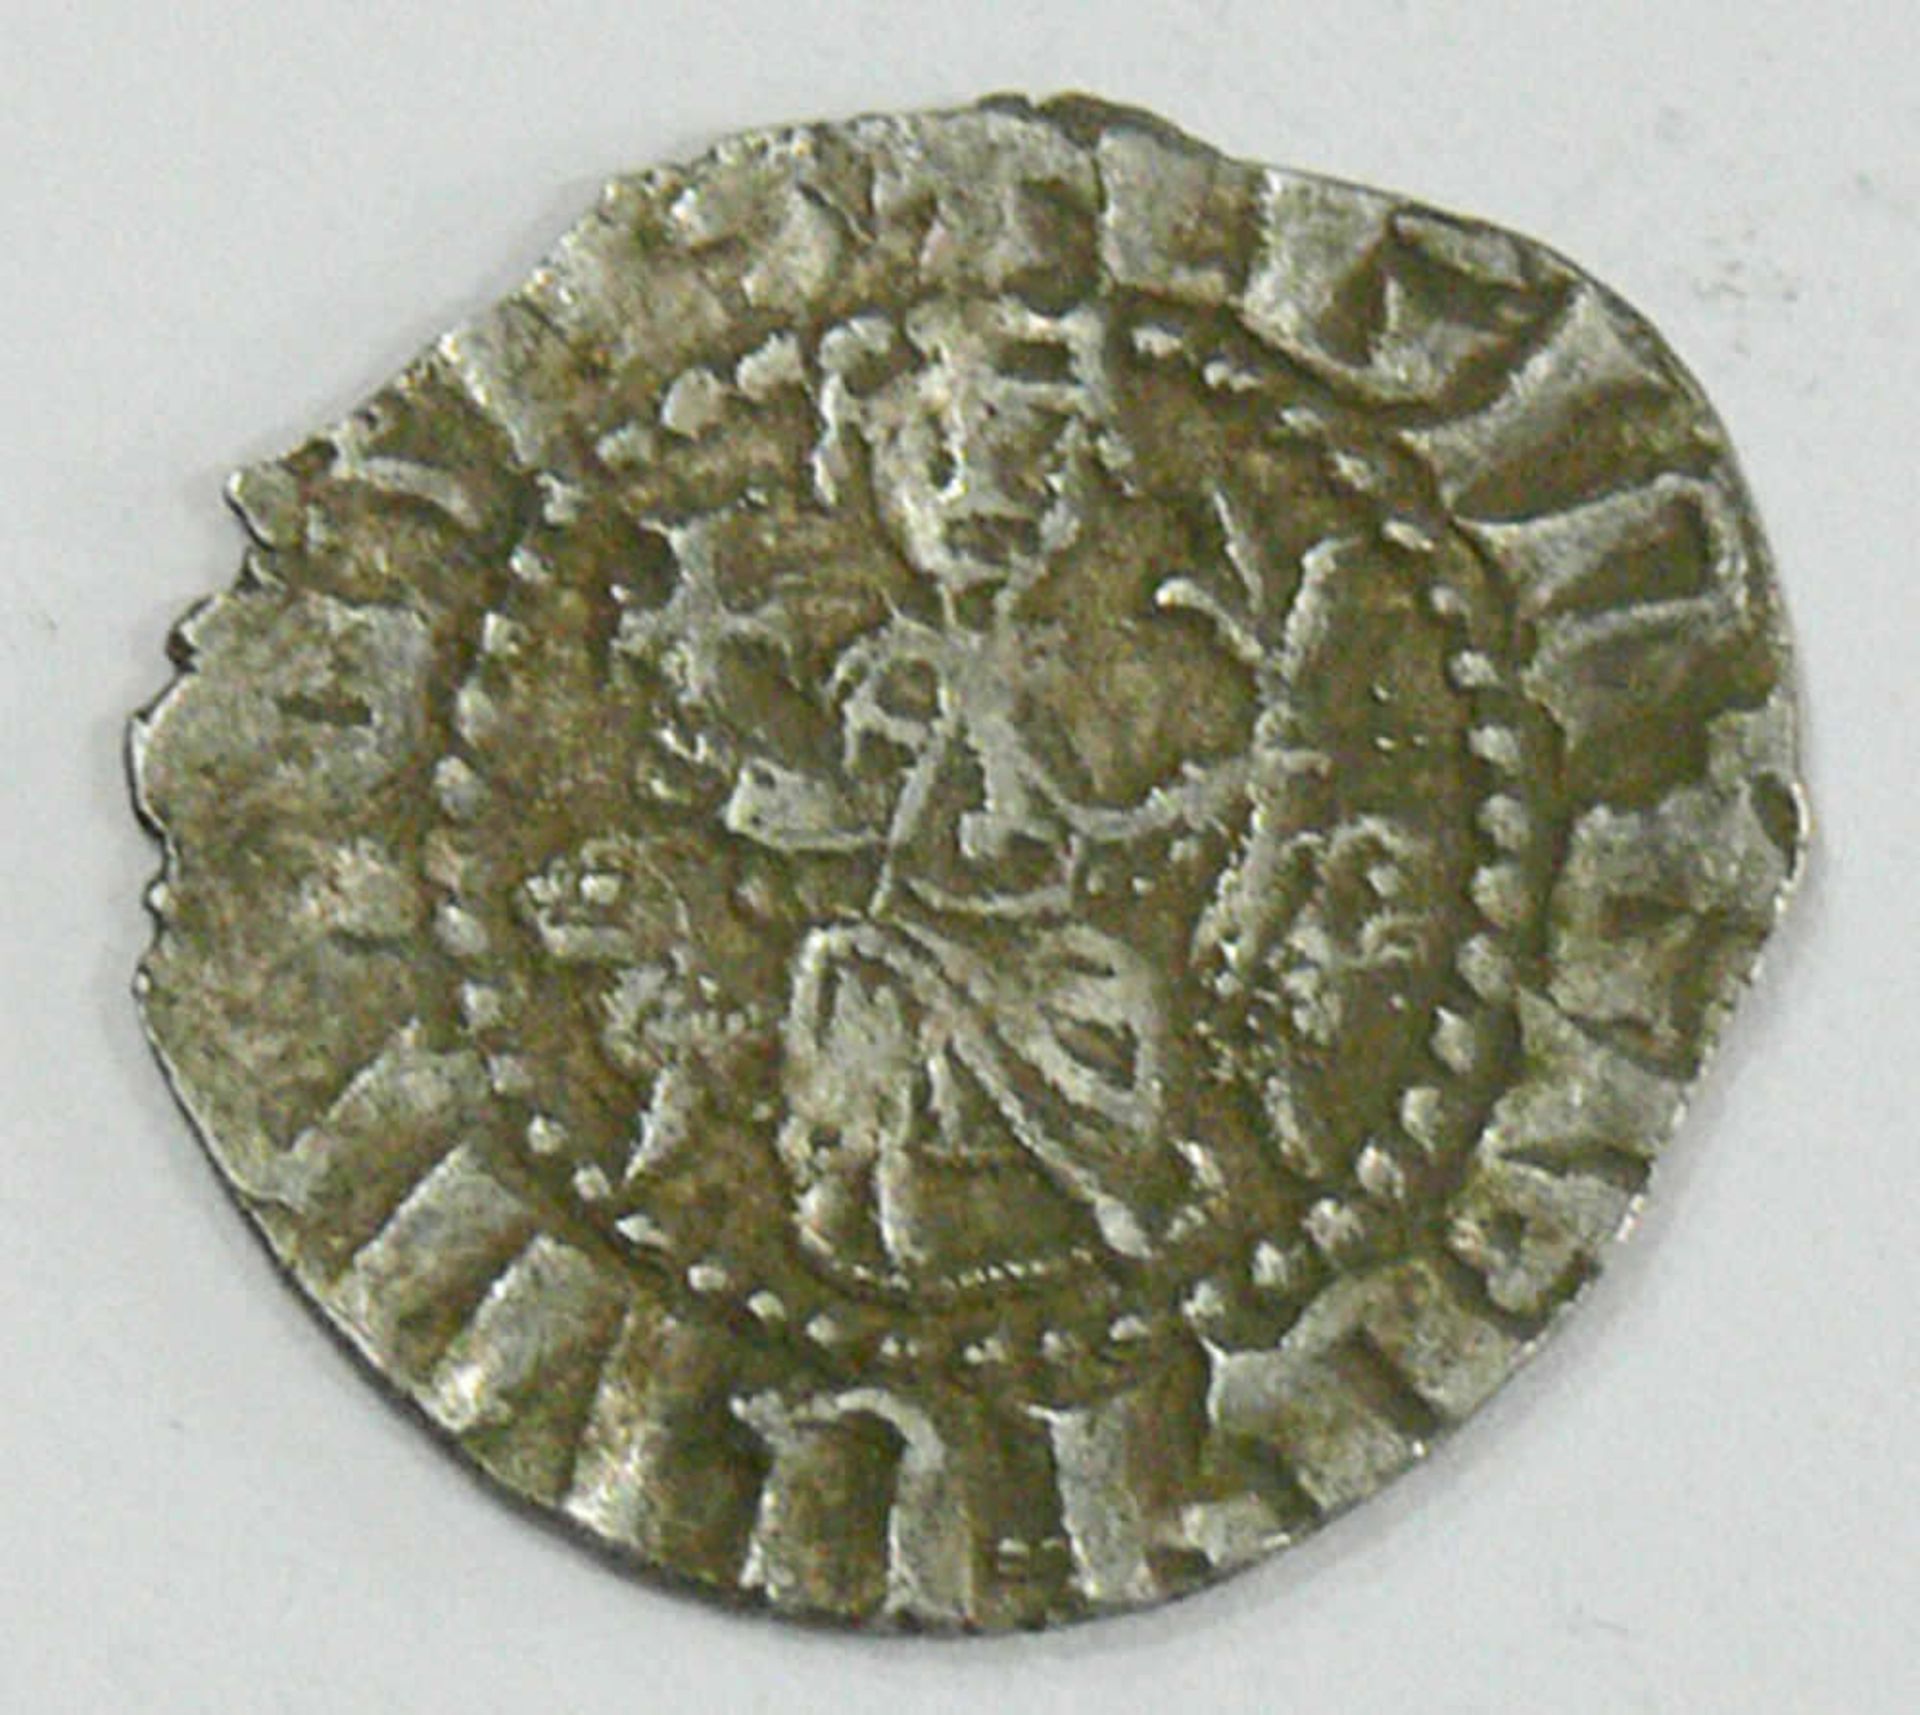 Armenien 1185-1219,Silbermünze Leo I.. Wahrscheinlich zur Kröning geprägt. Vorderseite: Leo I. und